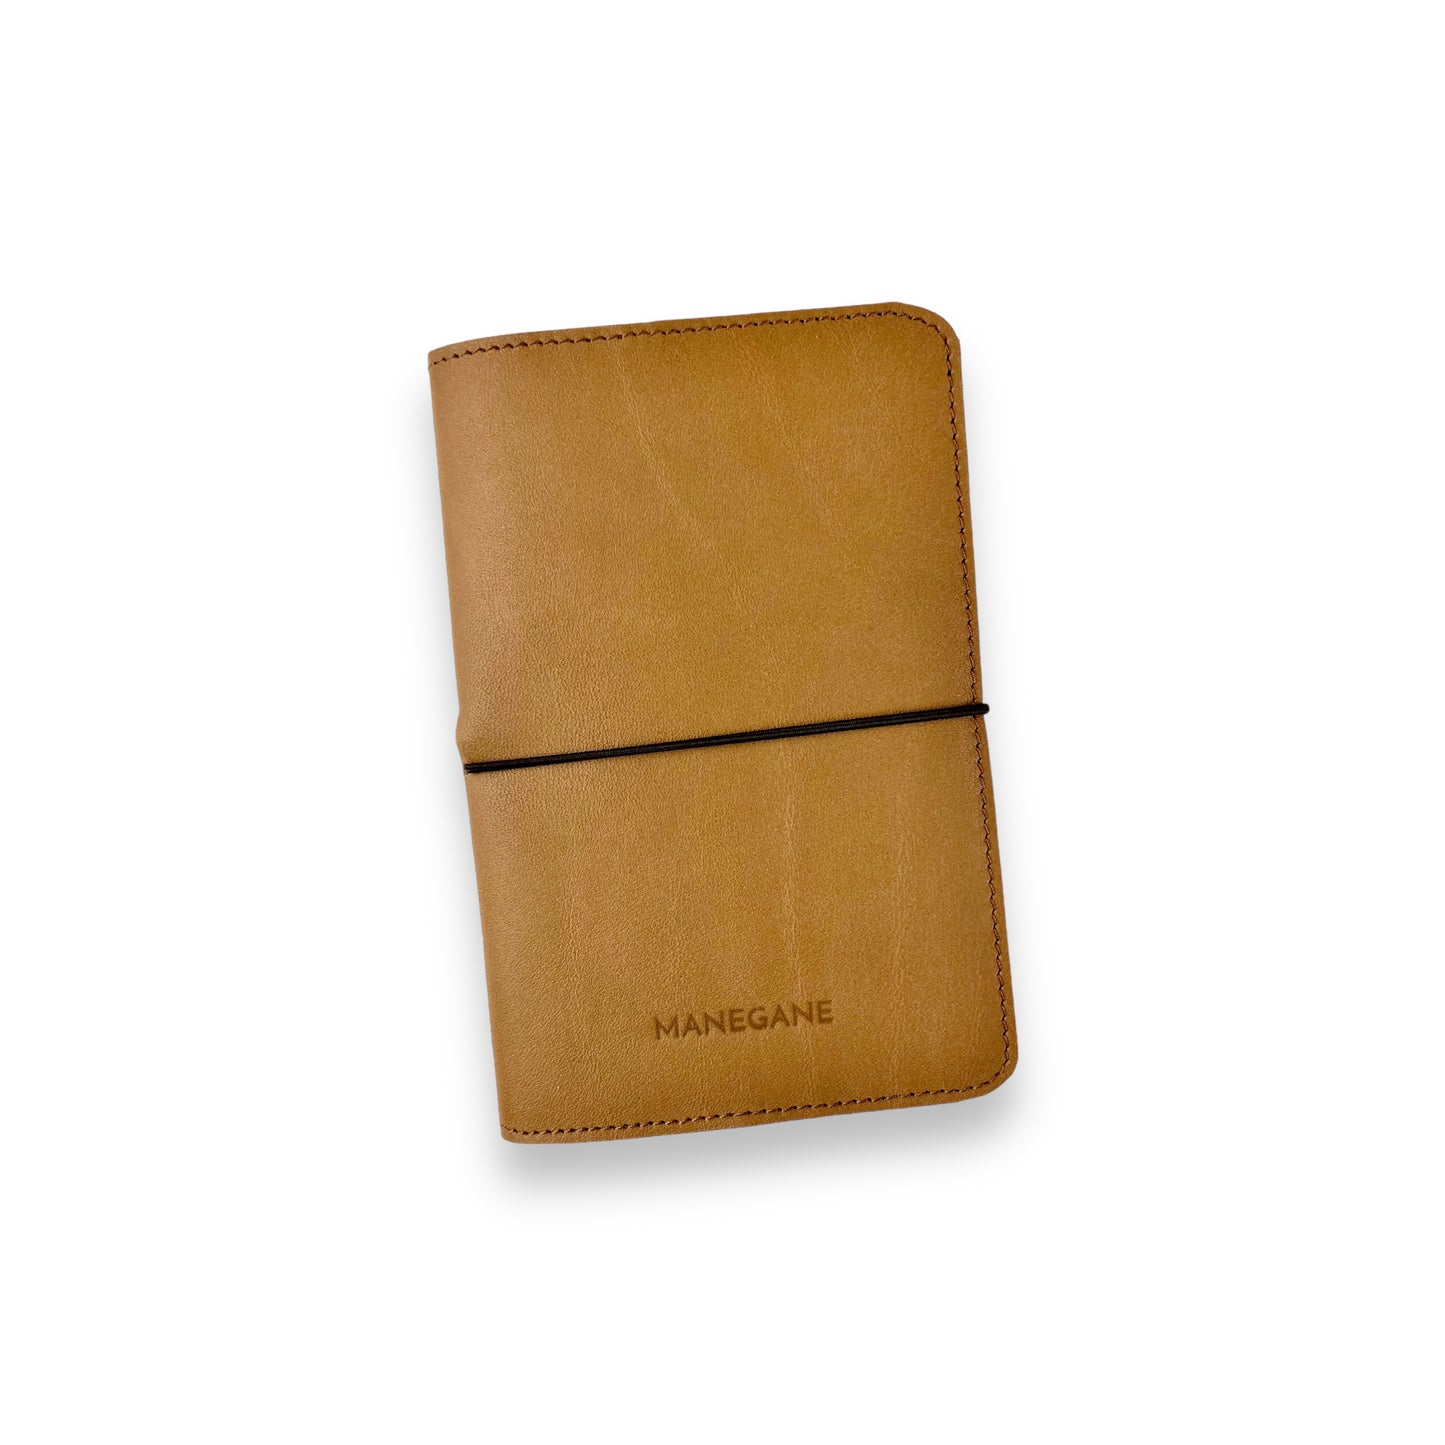 Personnalisation Couleurs/ Motif/ Écriture sur carnets Notebook